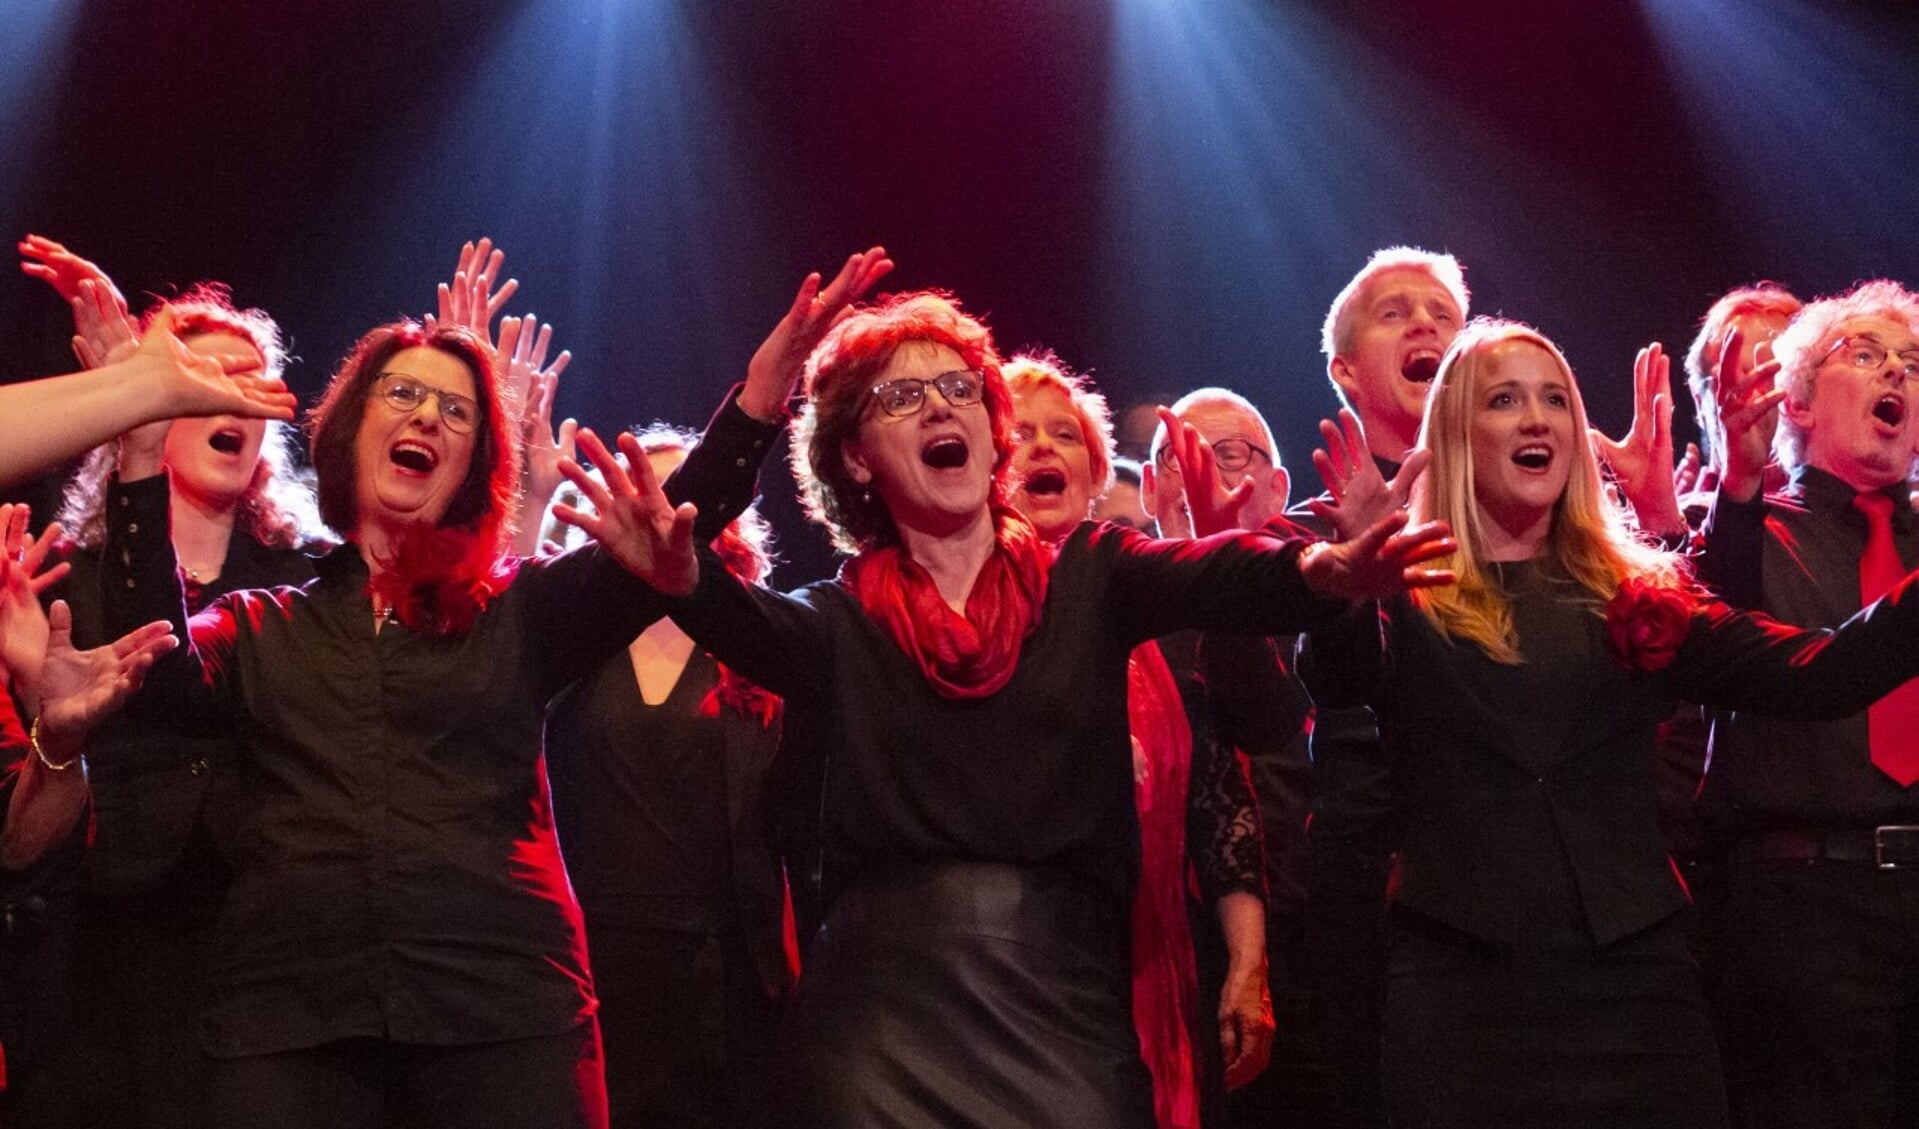 Op zaterdagavond 14 mei verzorgt Gospelkoor Spirit een optreden in het Beneluxtheater (Den Durpsherd) in Berlicum.